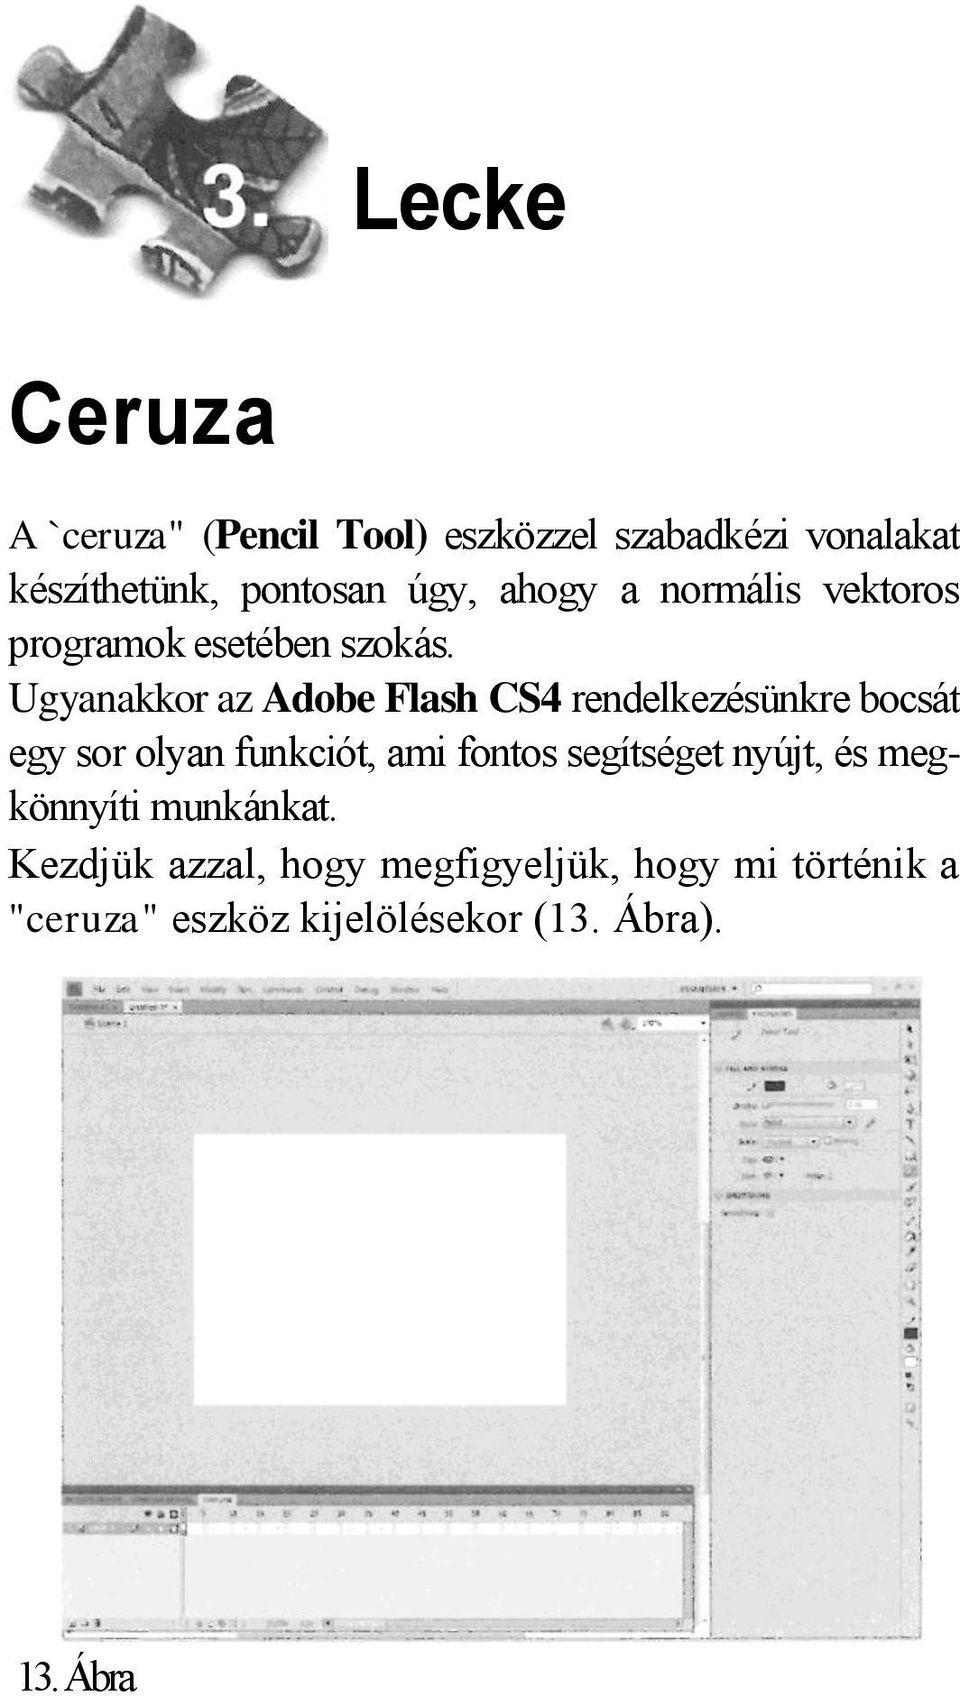 Ugyanakkor az Adobe Flash CS4 rendelkezésünkre bocsát egy sor olyan funkciót, ami fontos